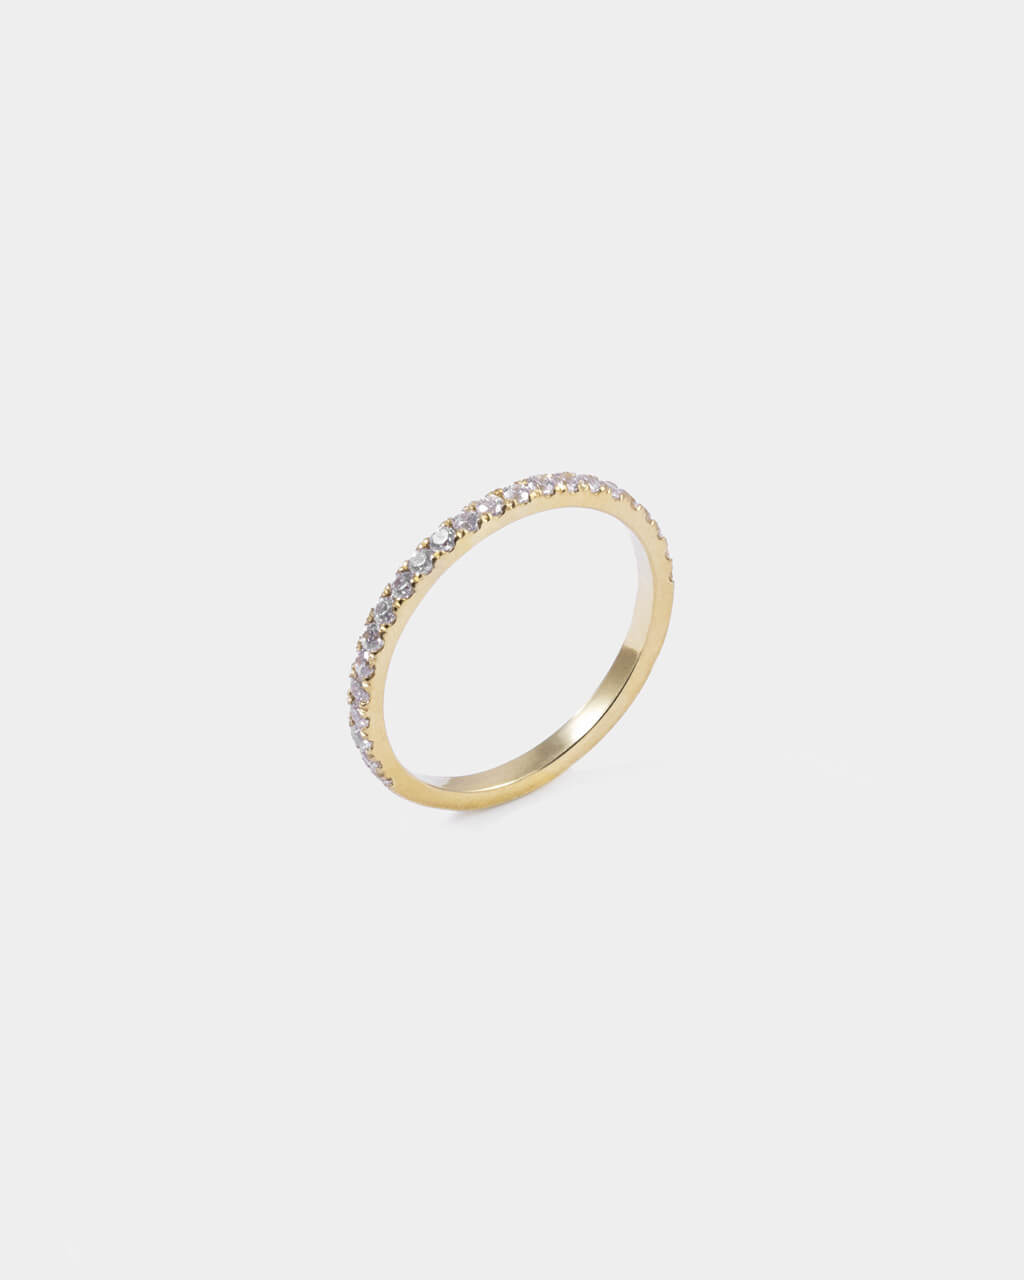 Half Eternity Ring aus Gold mit Diamanten besetzt. 